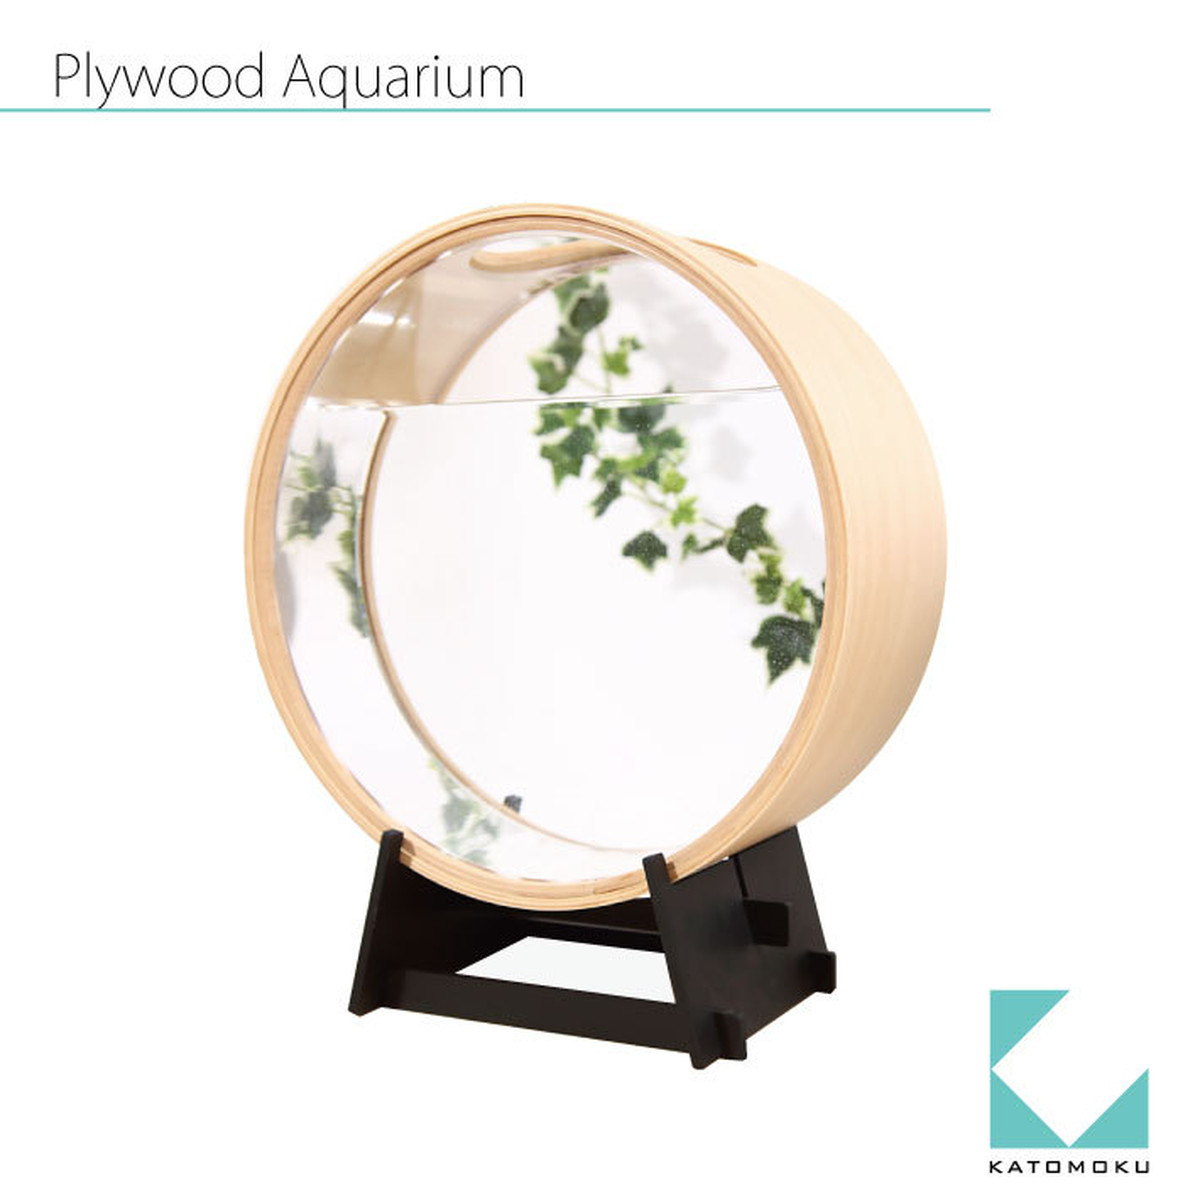 KATOMOKU plywood aquarium km51 加藤木工株式会社 online shop